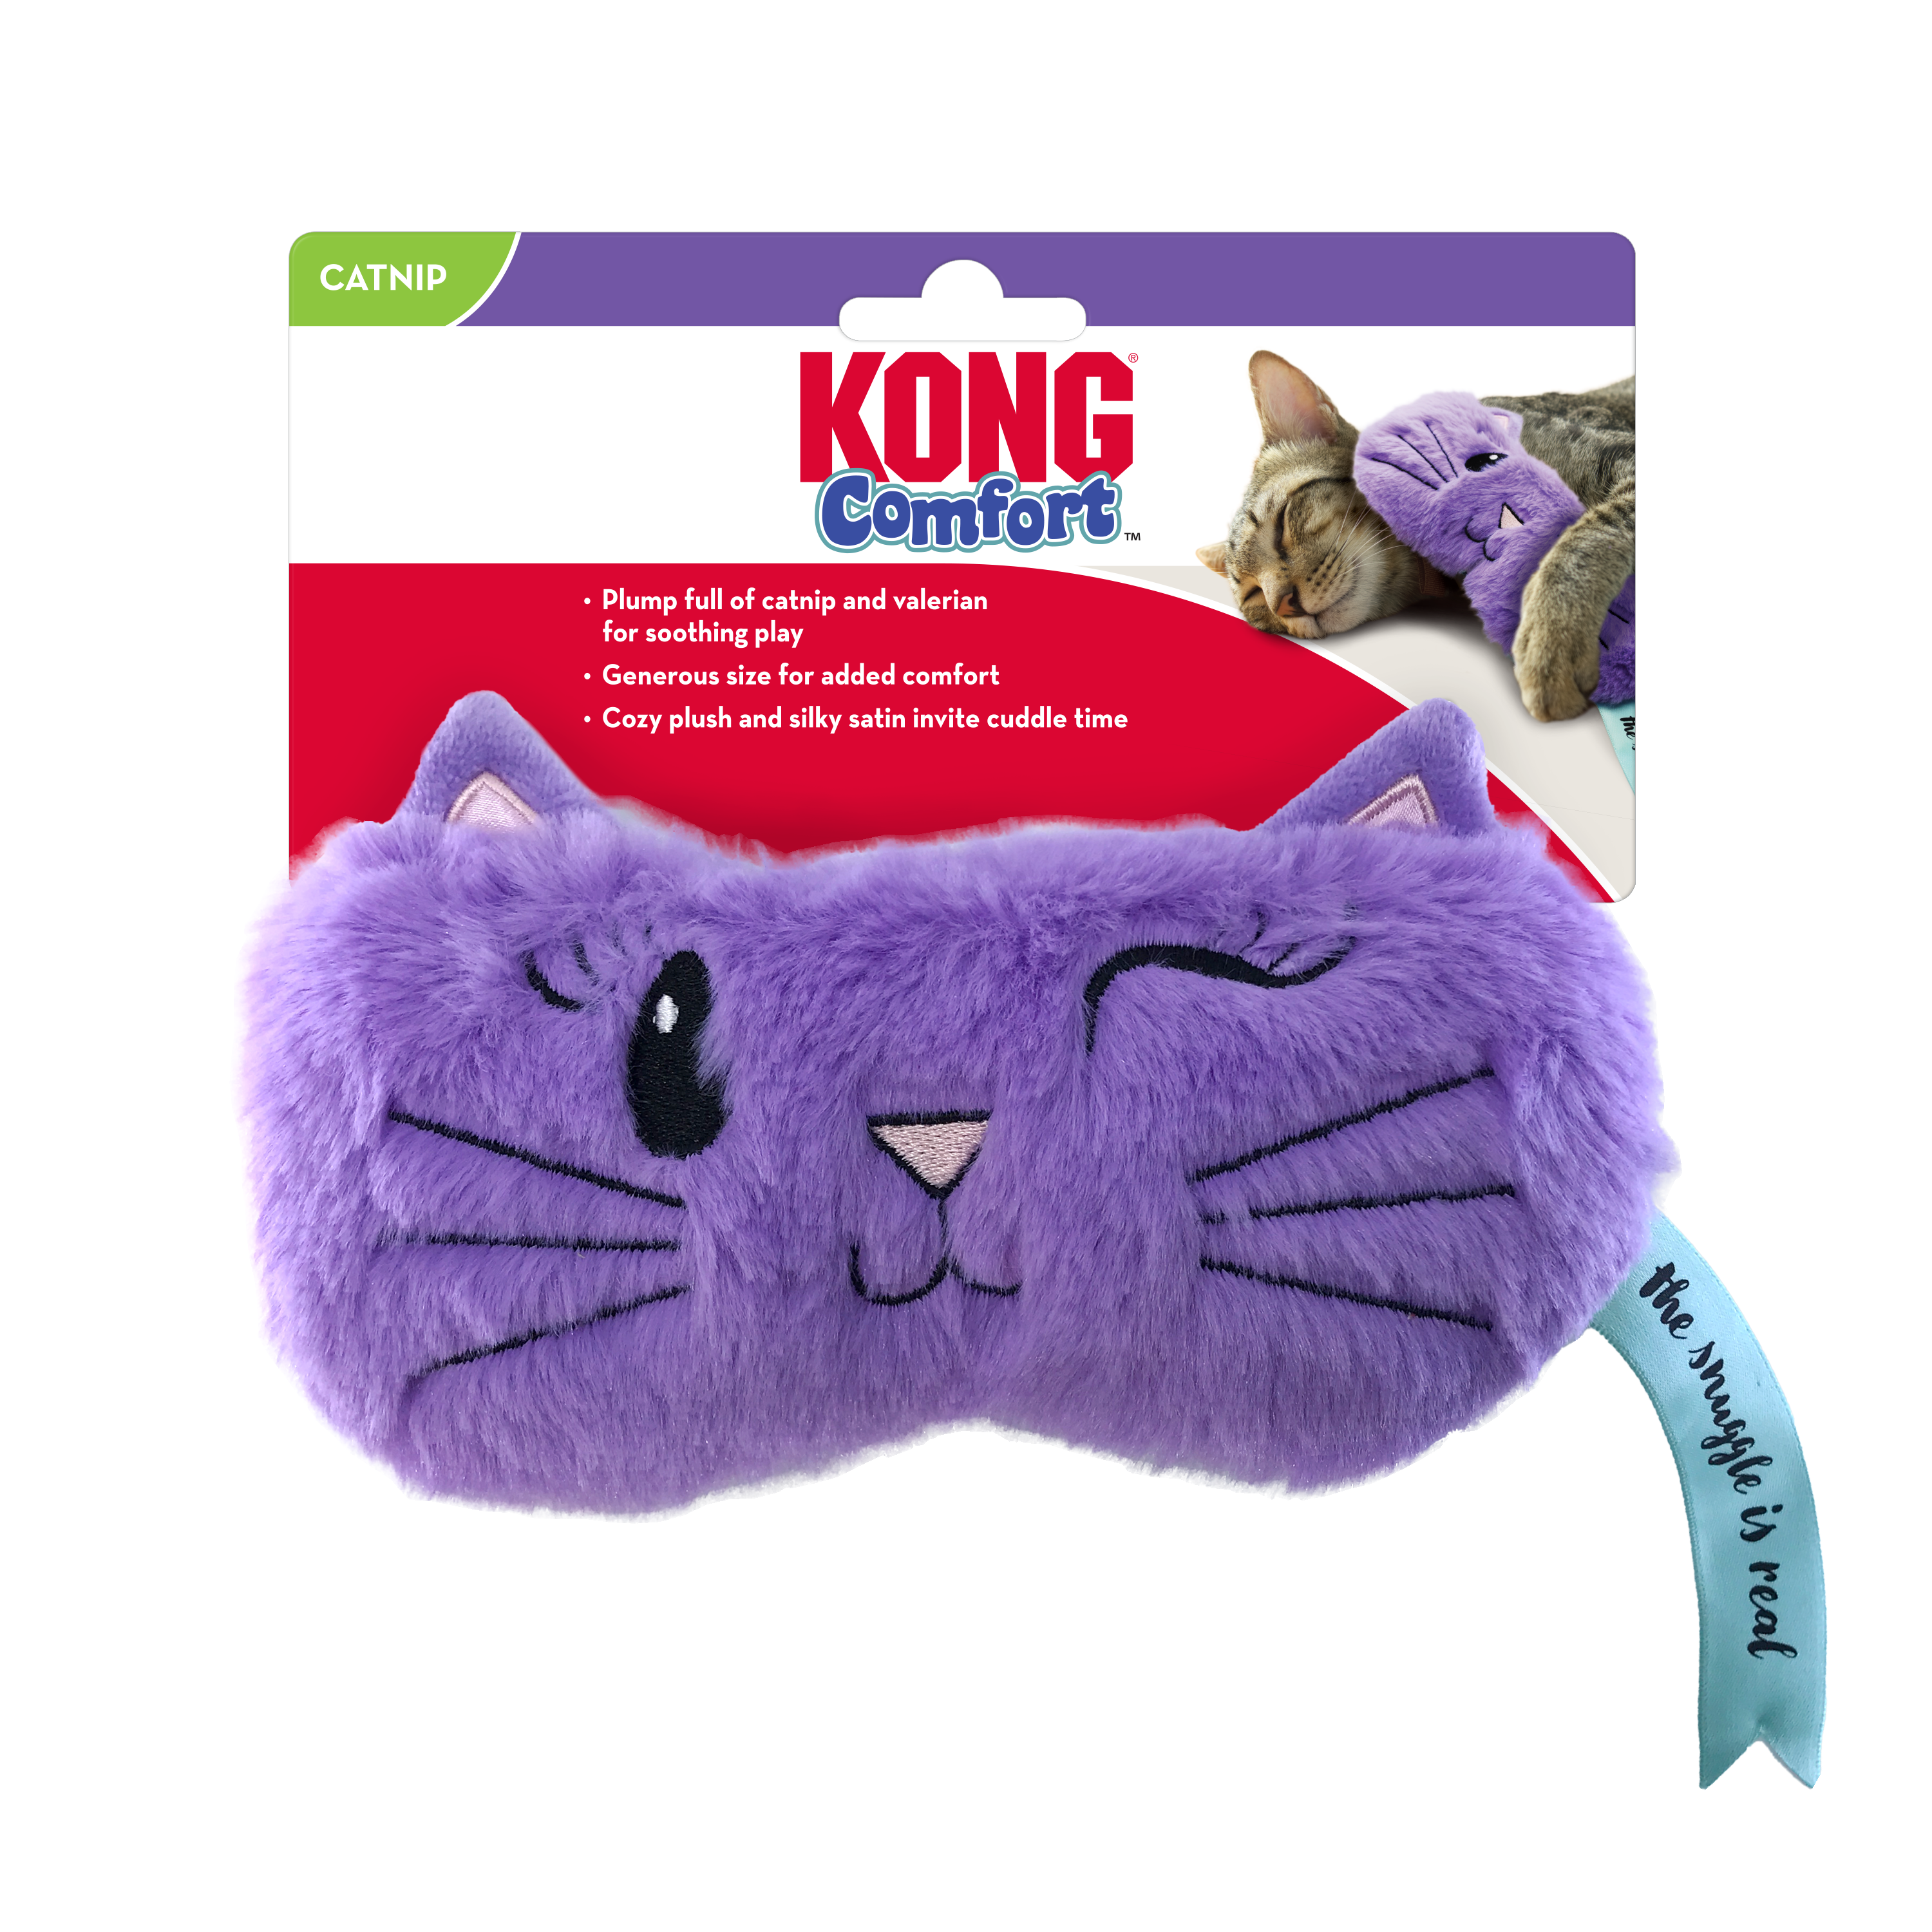 Cat Comfort Valerian onpack product image